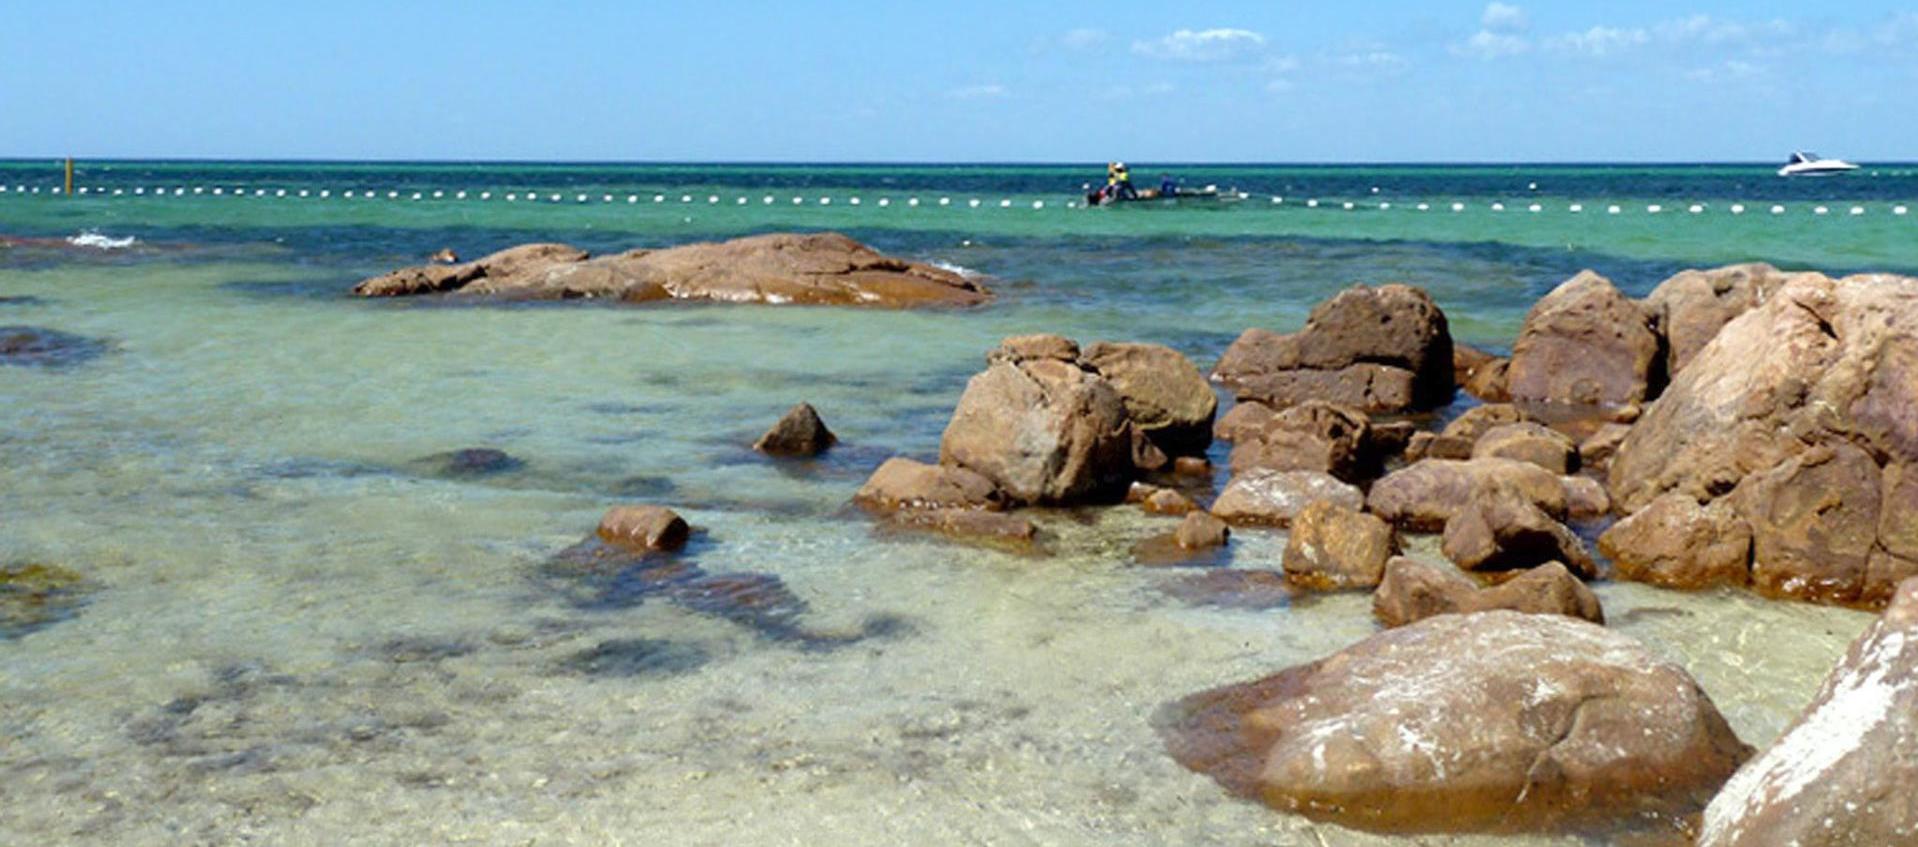 Playa australiana con protección de los tiburones.